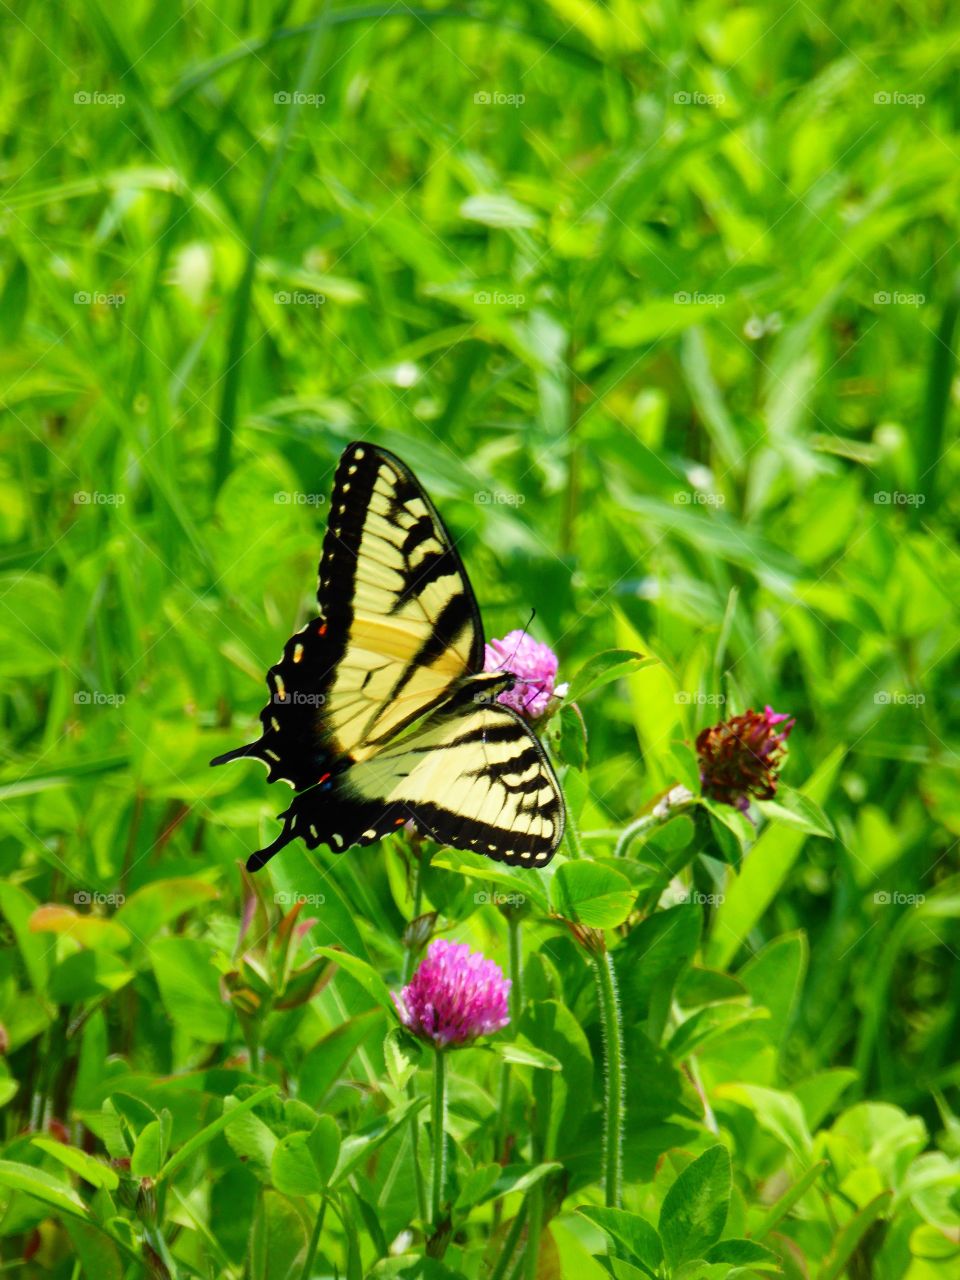 Butterfly in a field 4